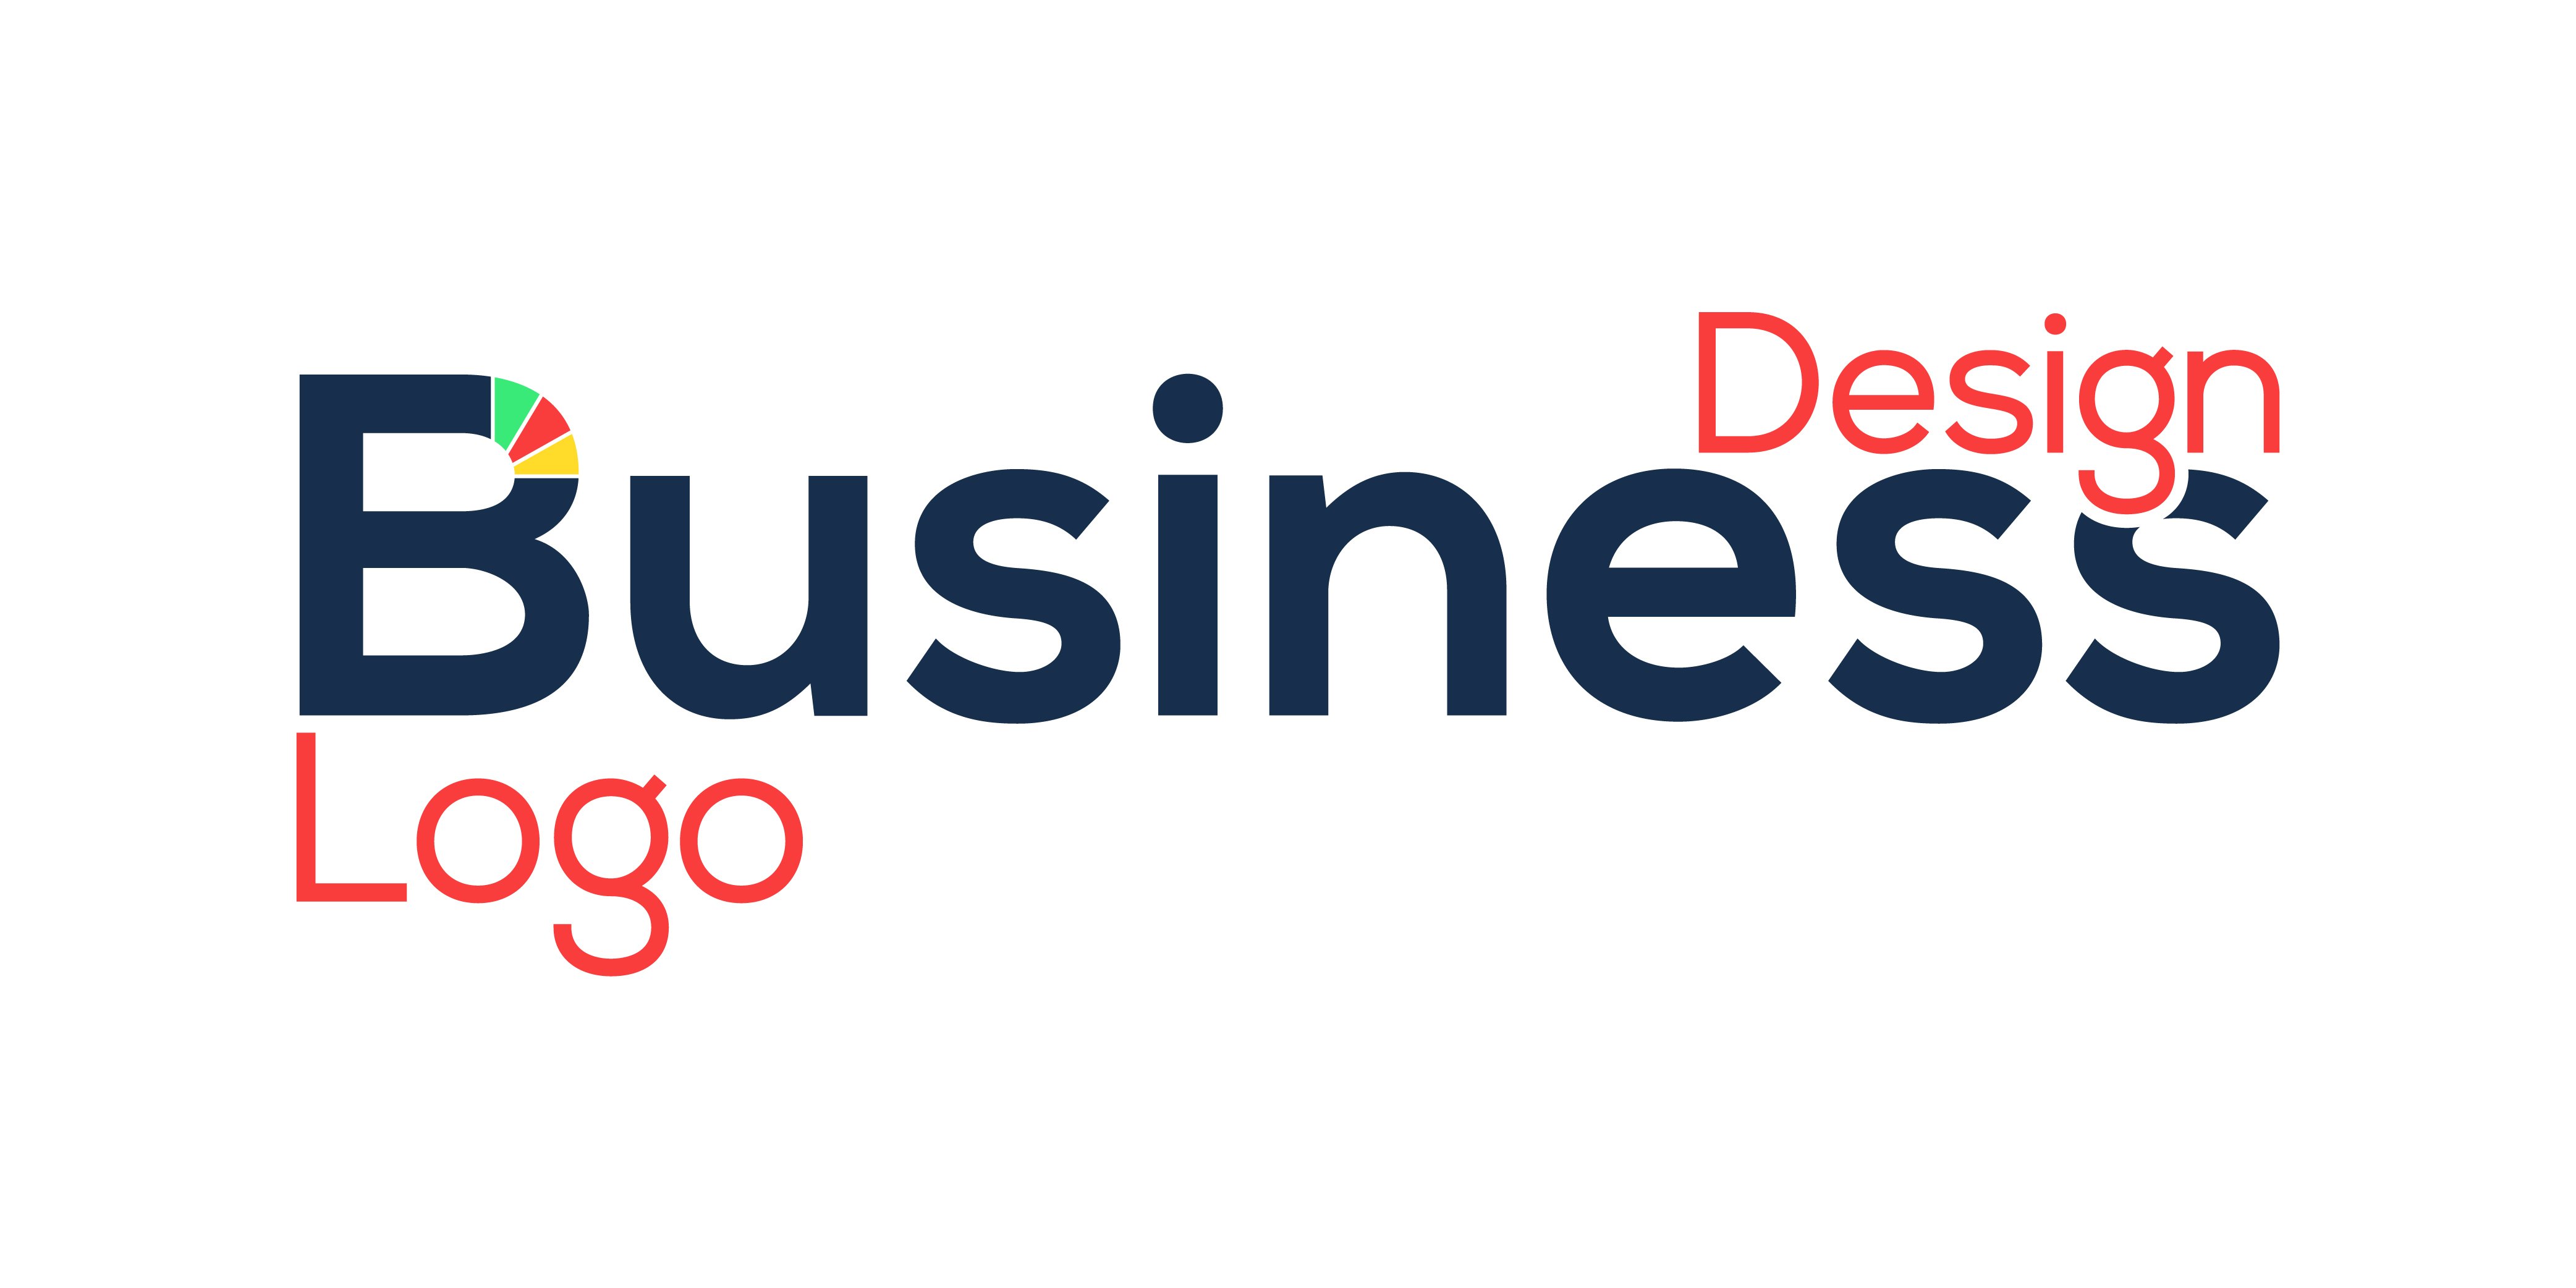 Design A Business Logo cover